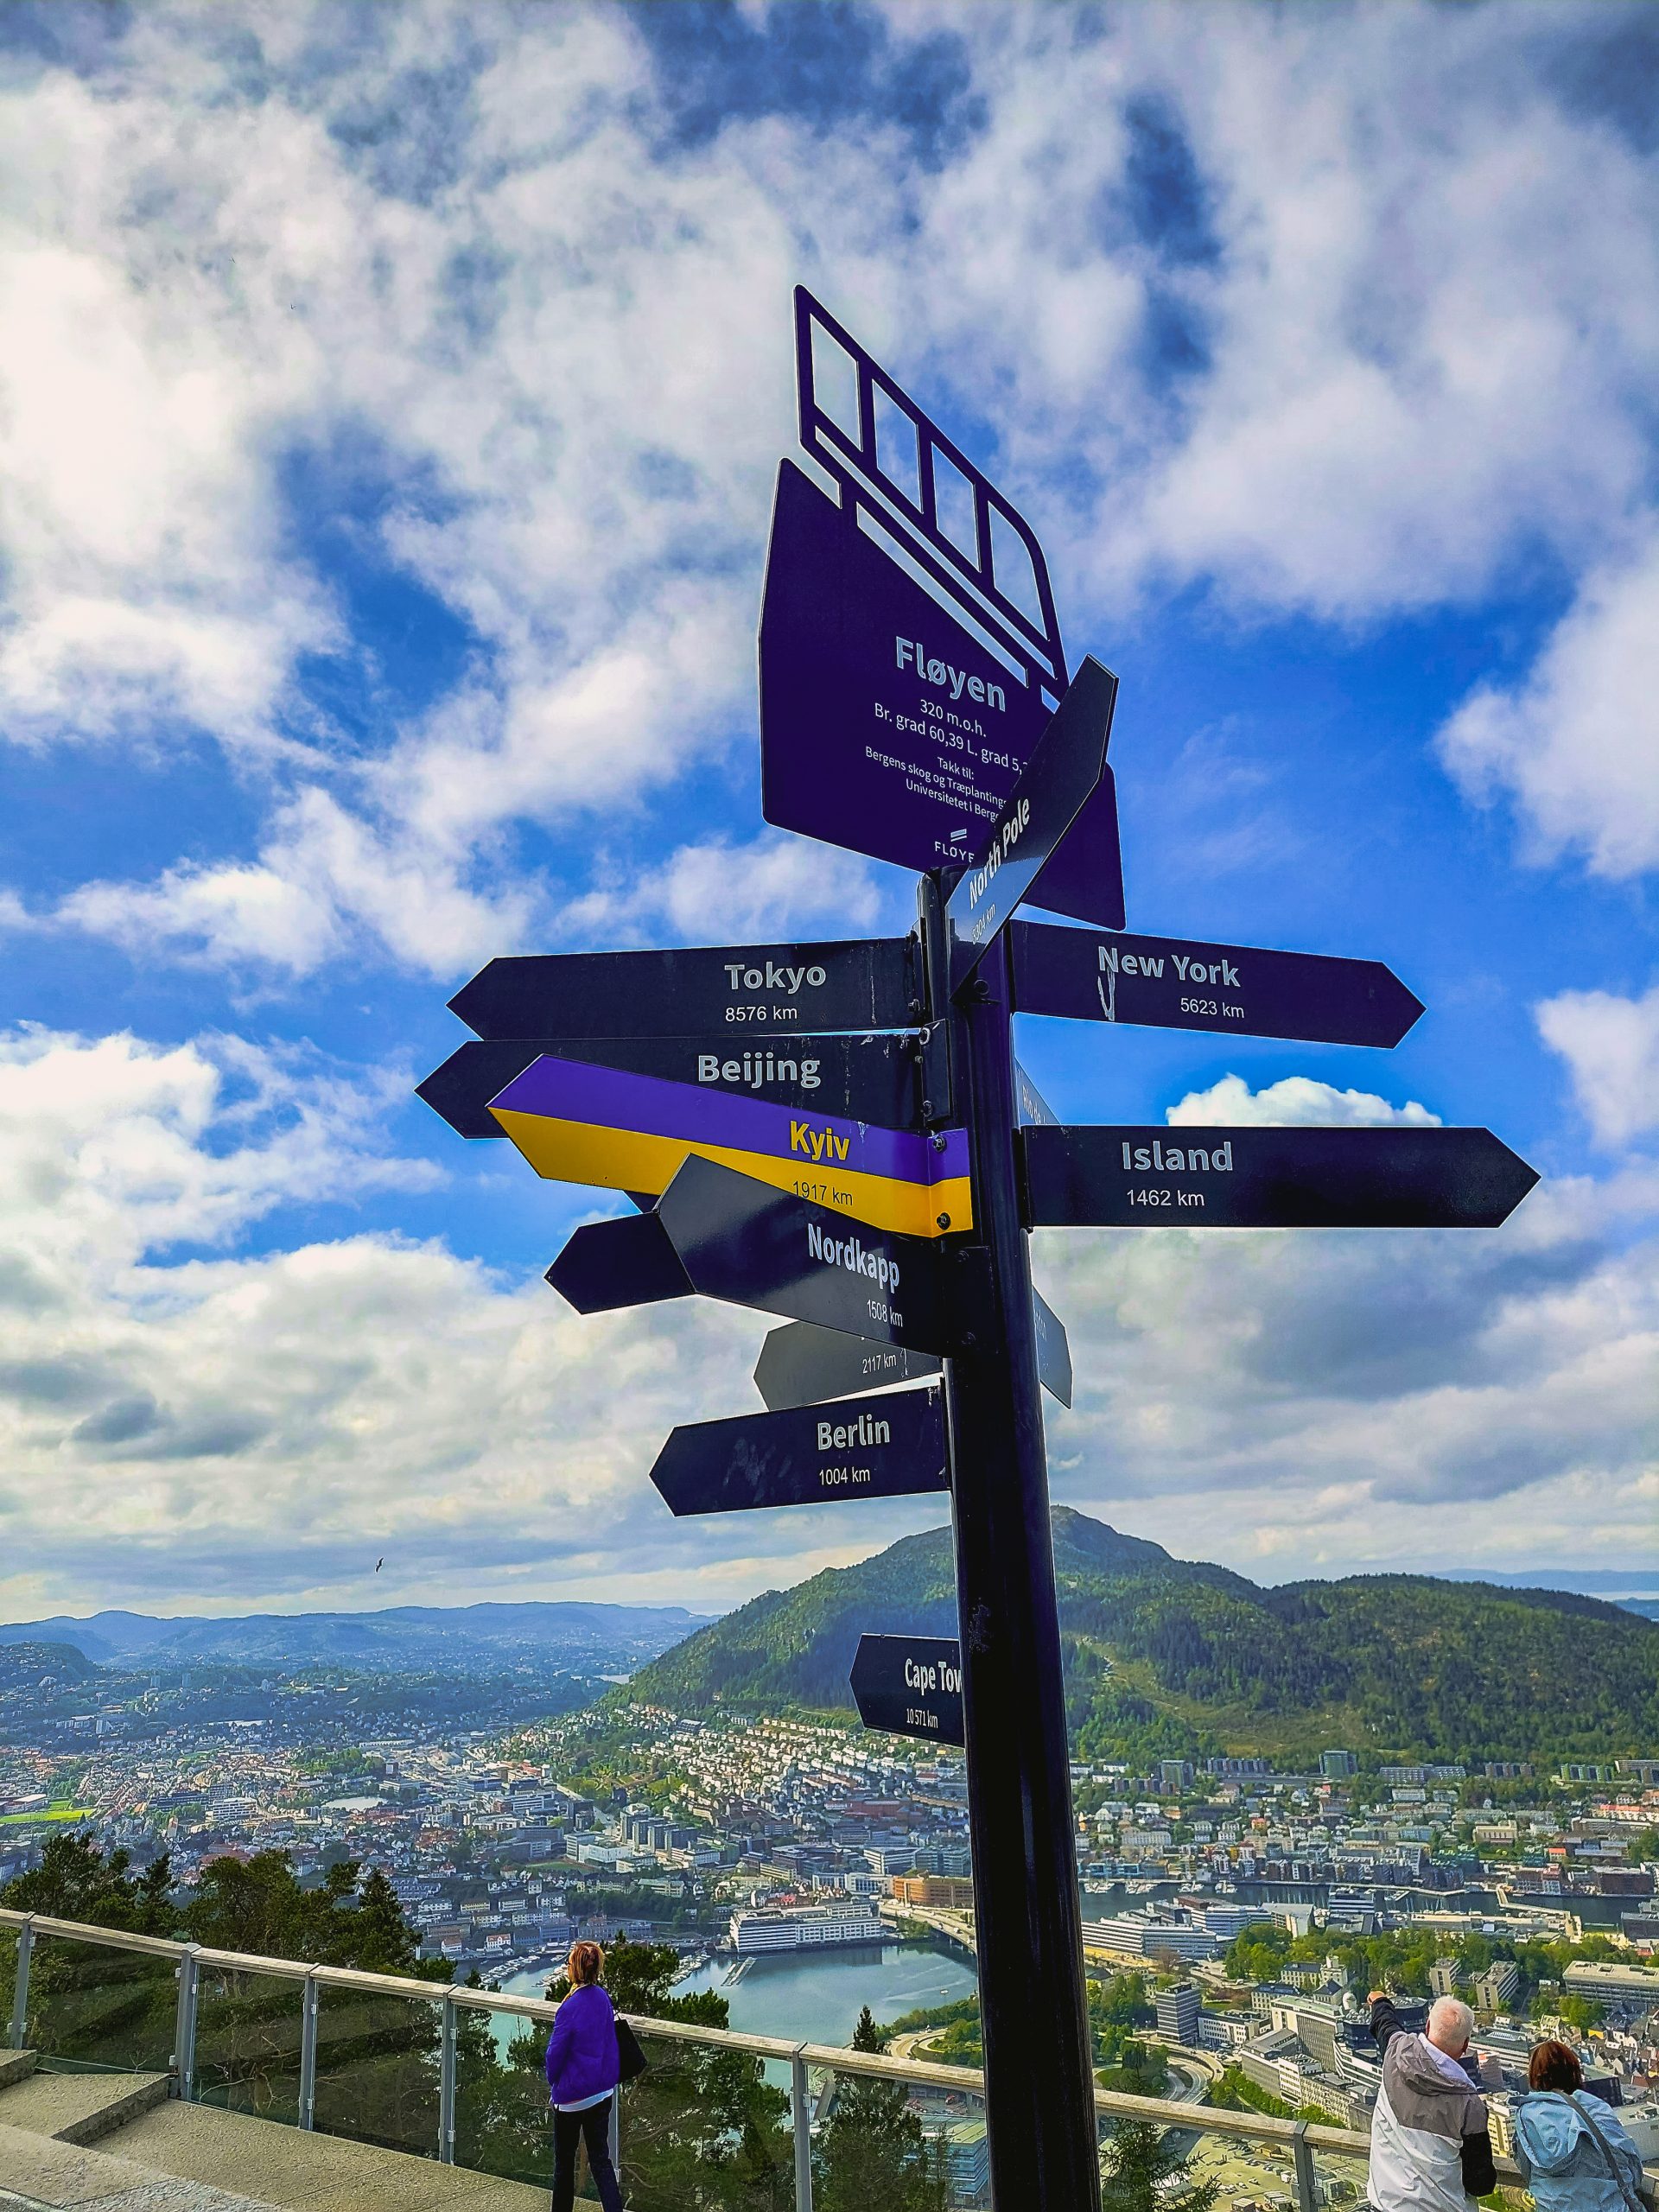 La collina che sovrasta la città,  fra le 5 cose imperdibili da fare a Bergen